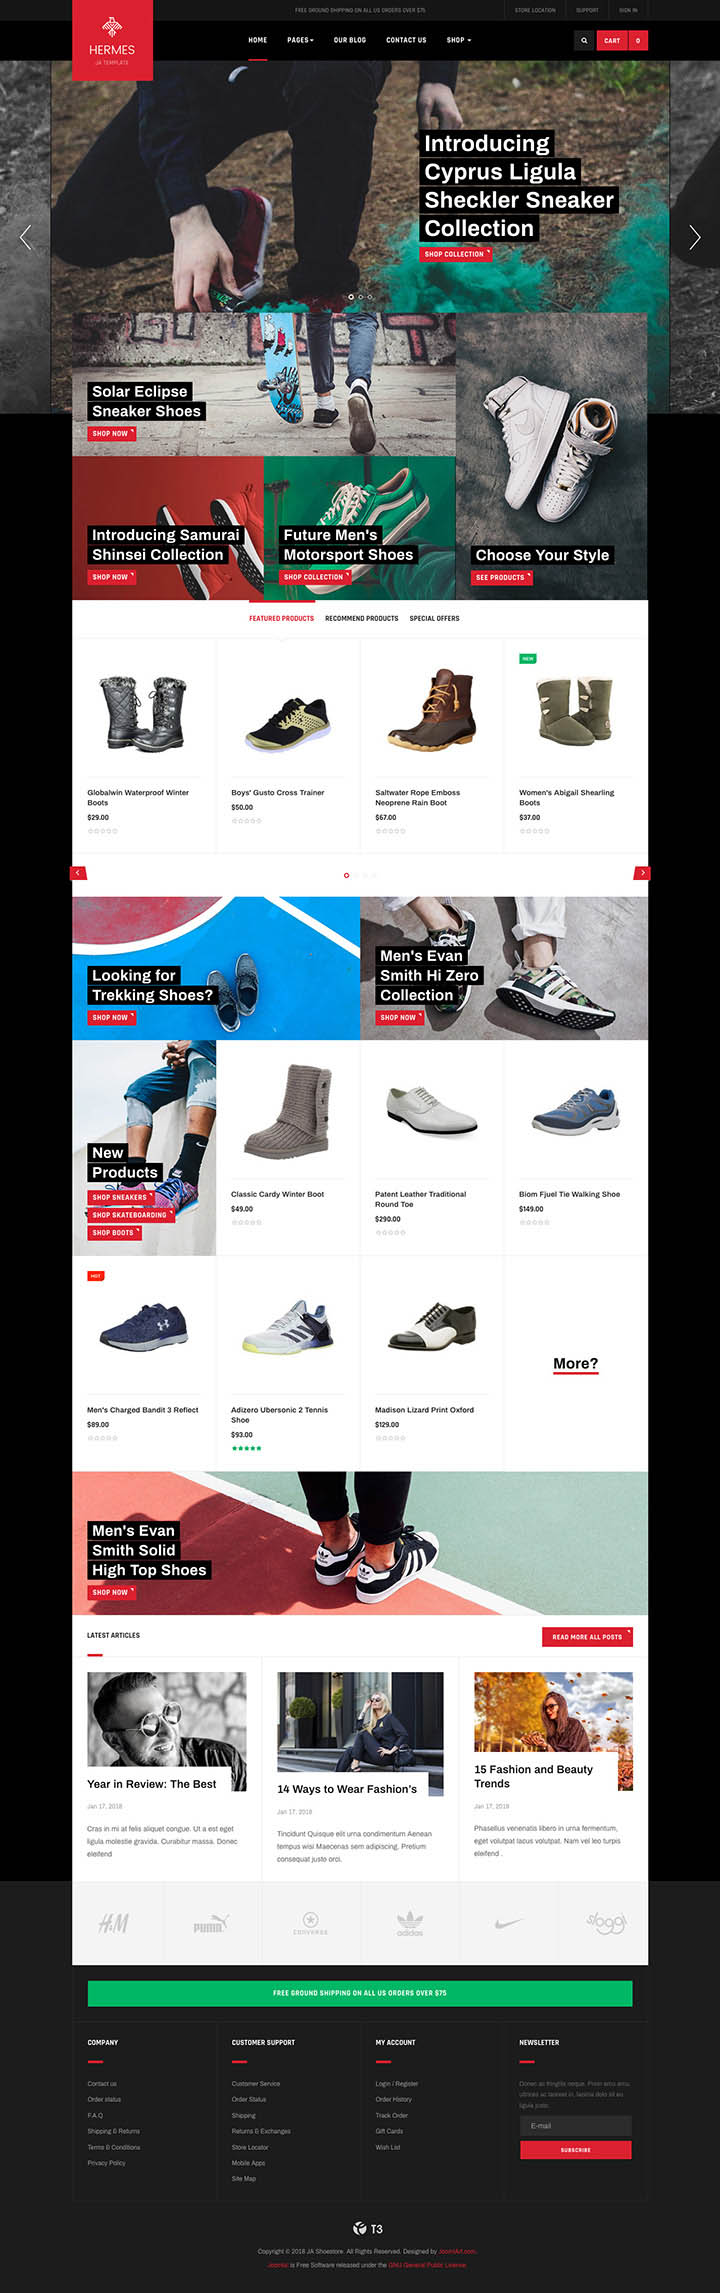 Шаблон для Joomla JoomlArt Shoe Store скачать бесплатно